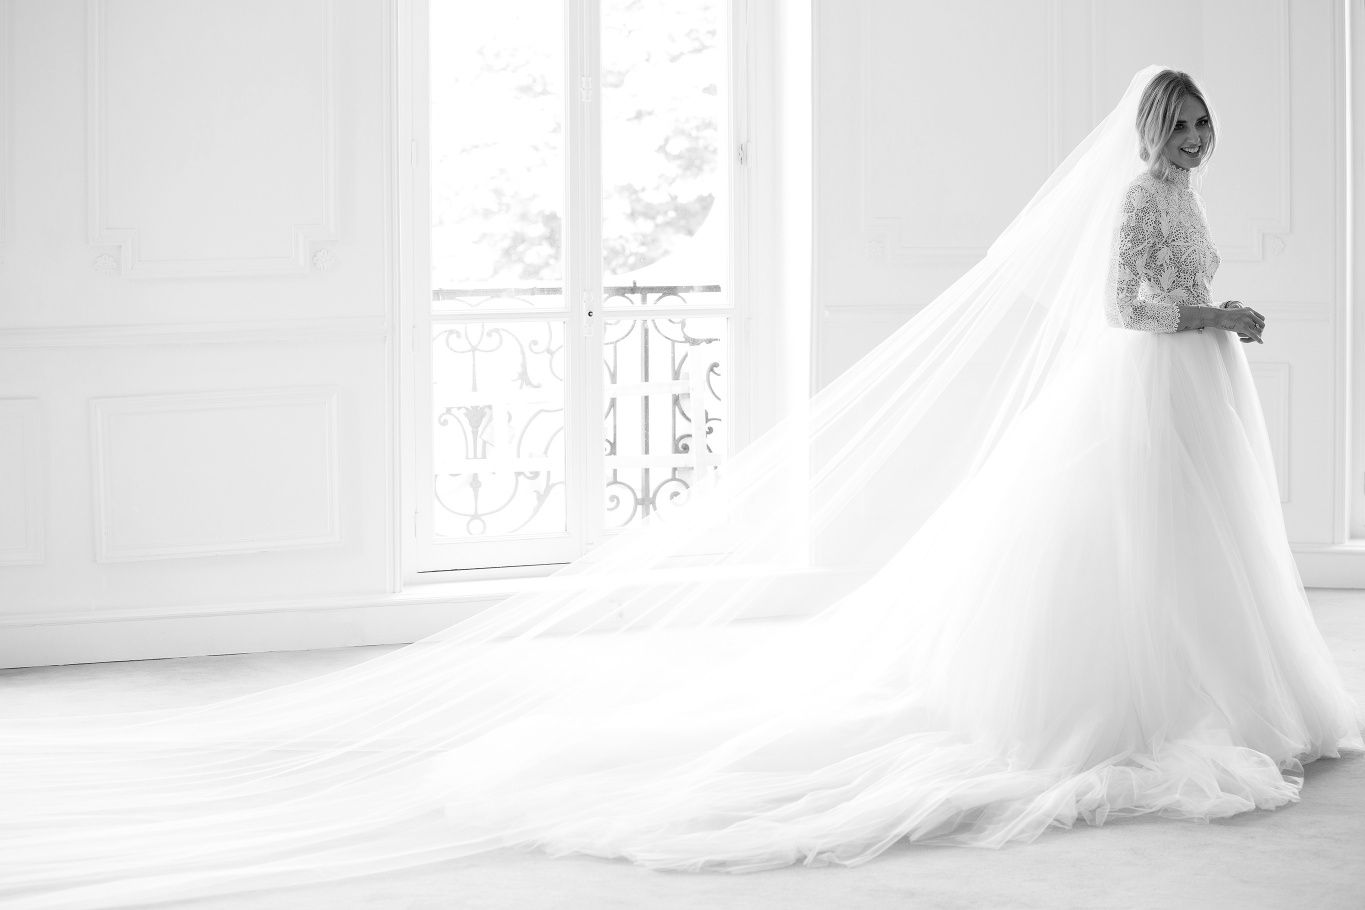 Chiara Ferragni Wedding - Video Chiara Ferragni Sees Her Dior Wedding ...